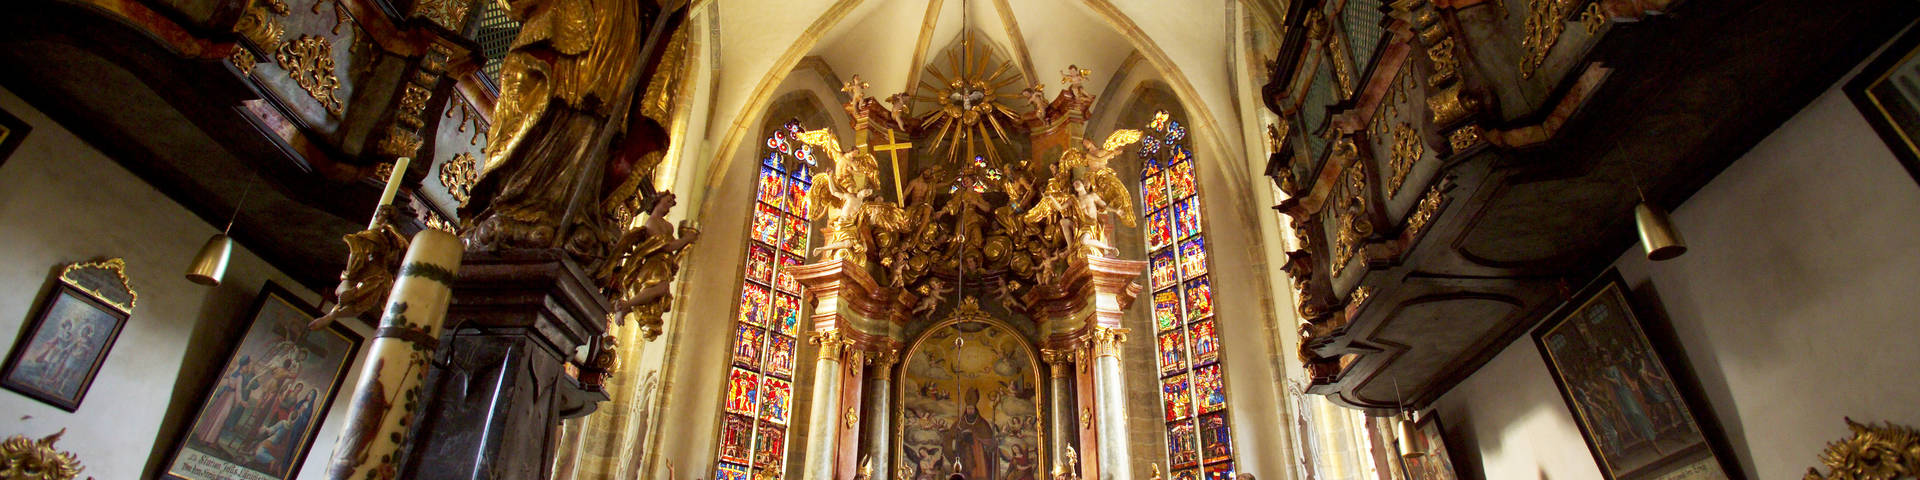 Altarraum in der Kirche St. Erhard